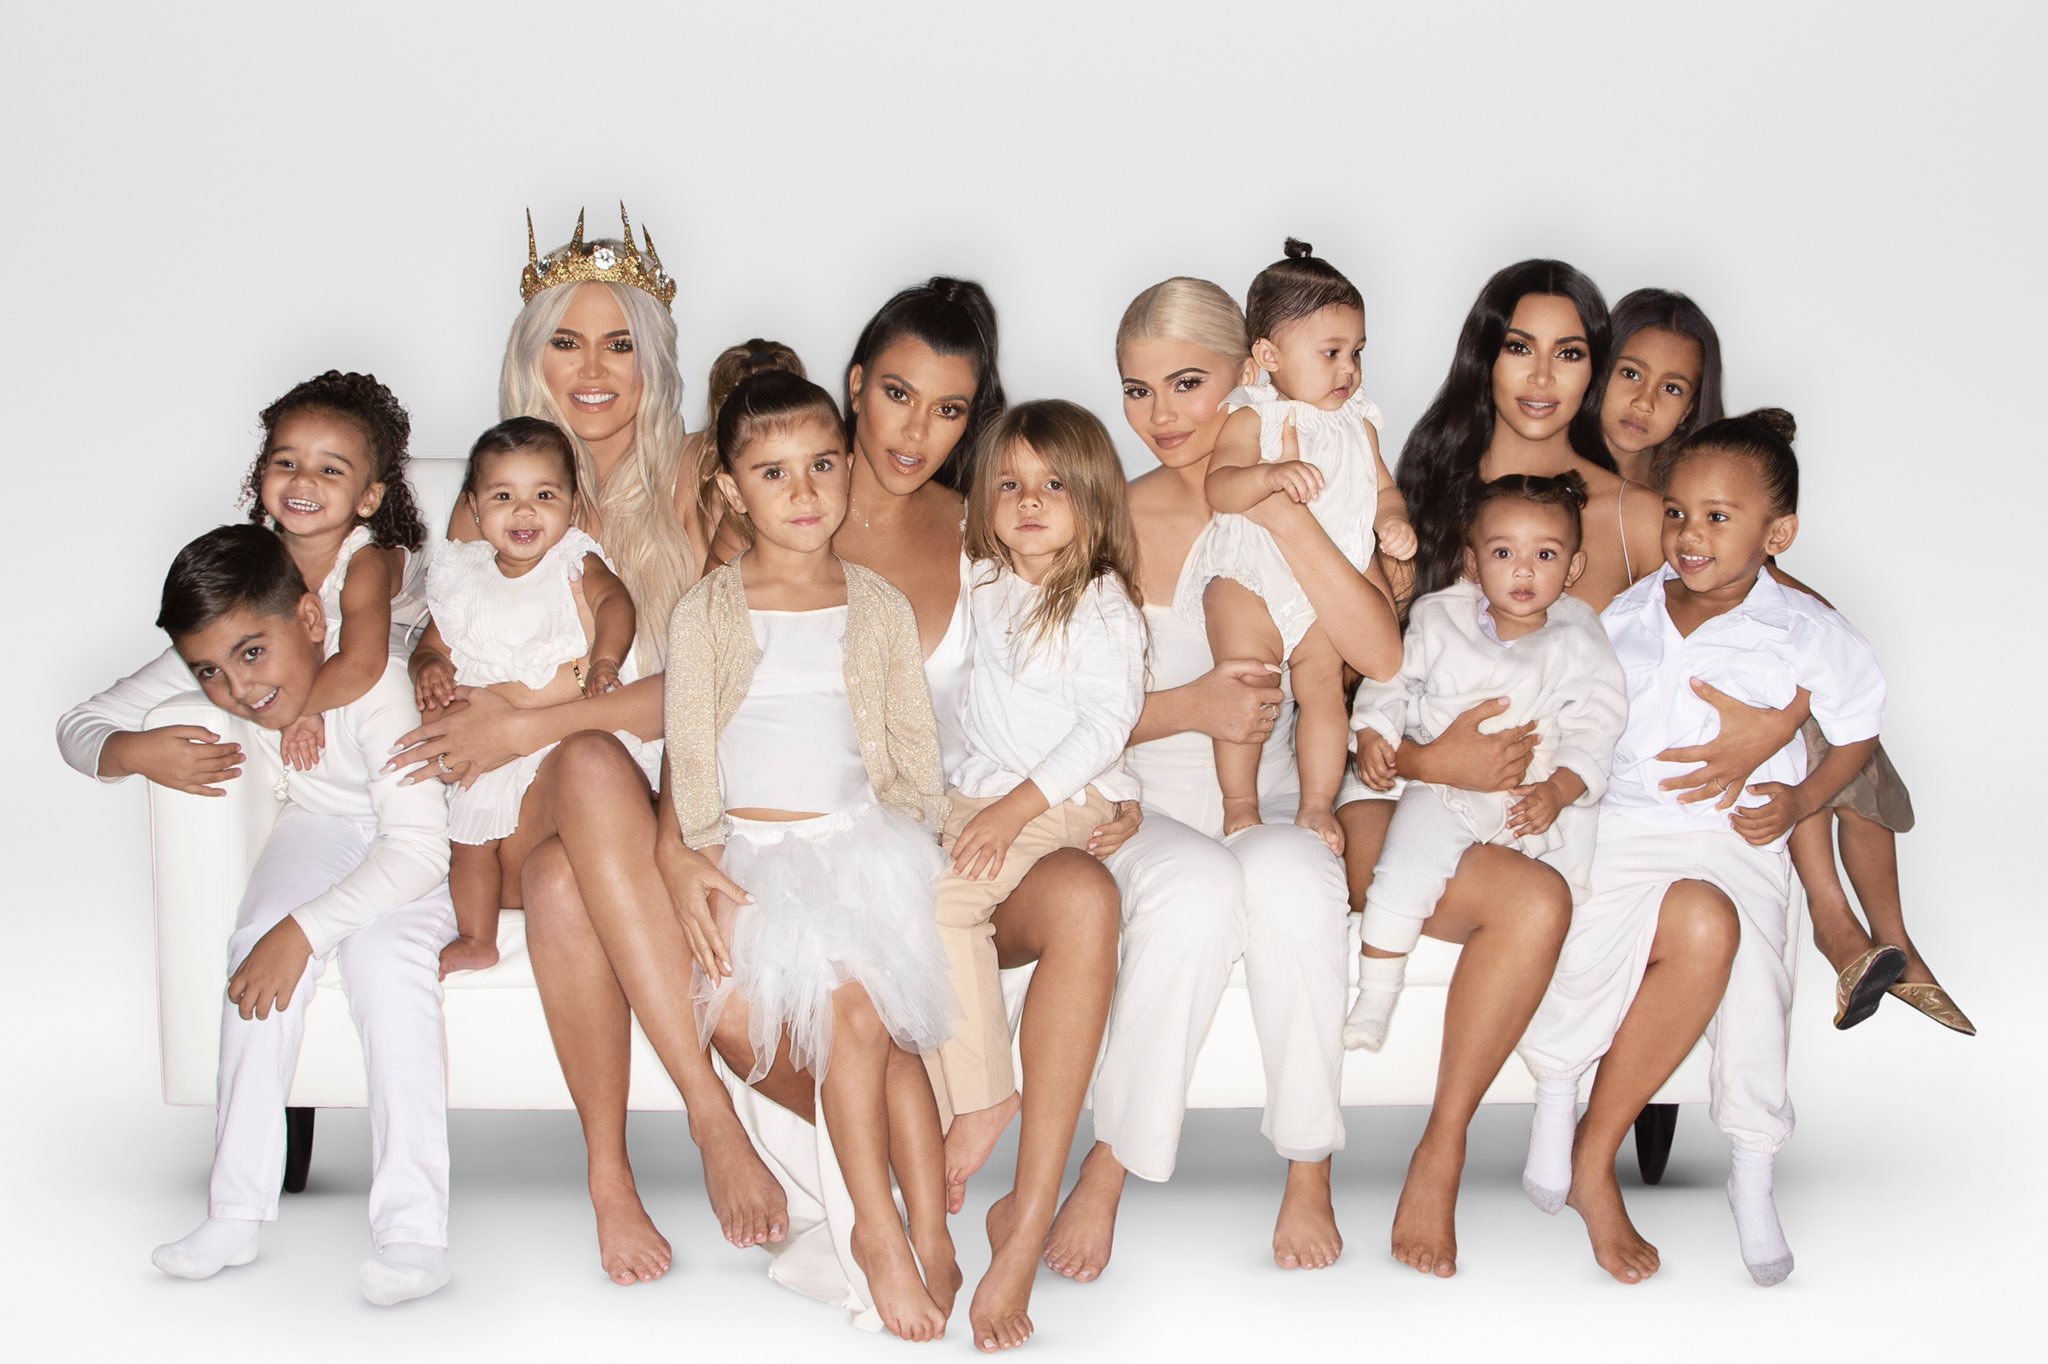 Surorile Kardashian-Jenner au postat o fotografie de familie, dar s-au făcut de râs. Ce au observat fanii